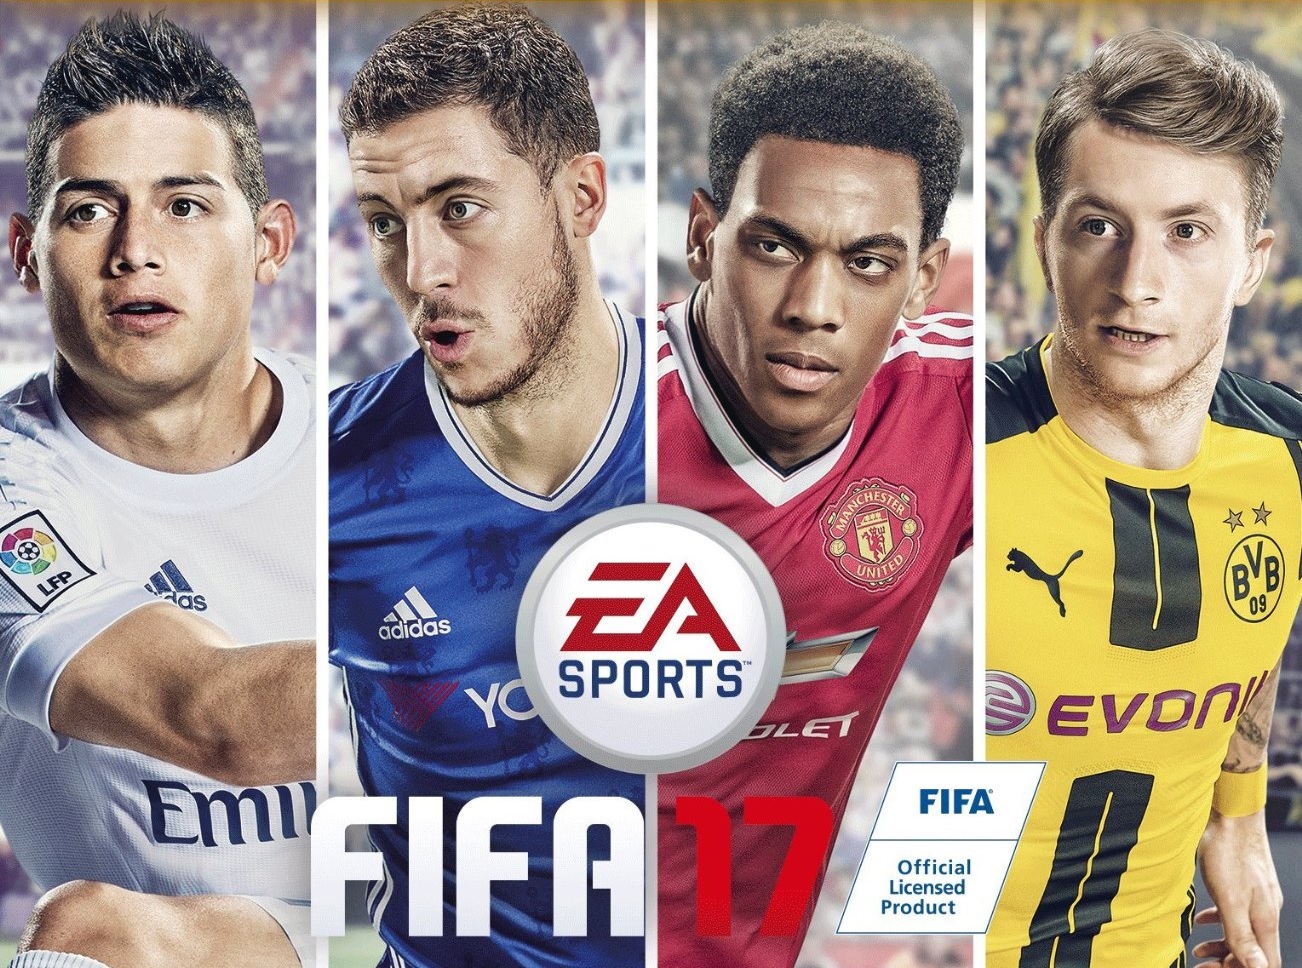 PES 2017 – Borussia Dortmund Partnership with Konami – FIFPlay